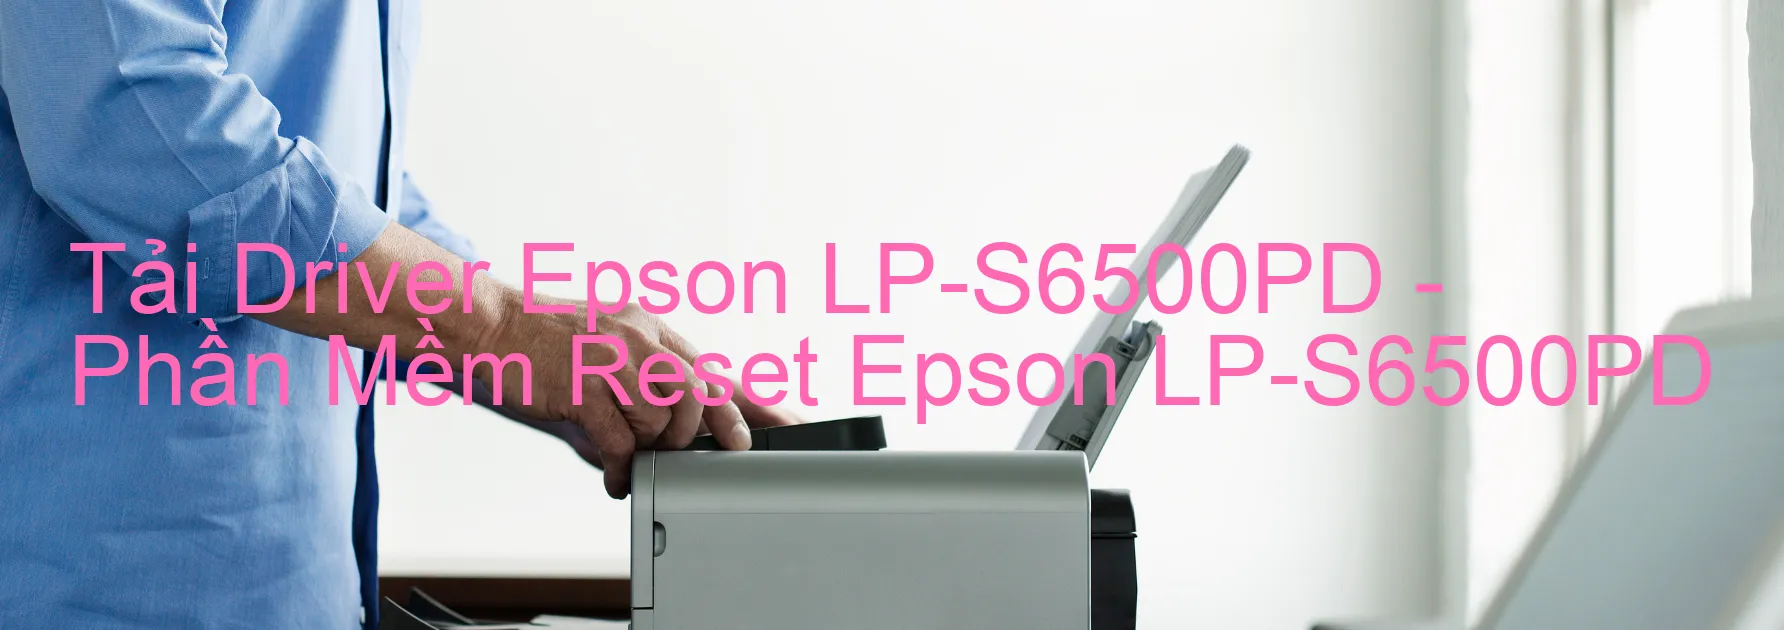 Driver Epson LP-S6500PD, Phần Mềm Reset Epson LP-S6500PD